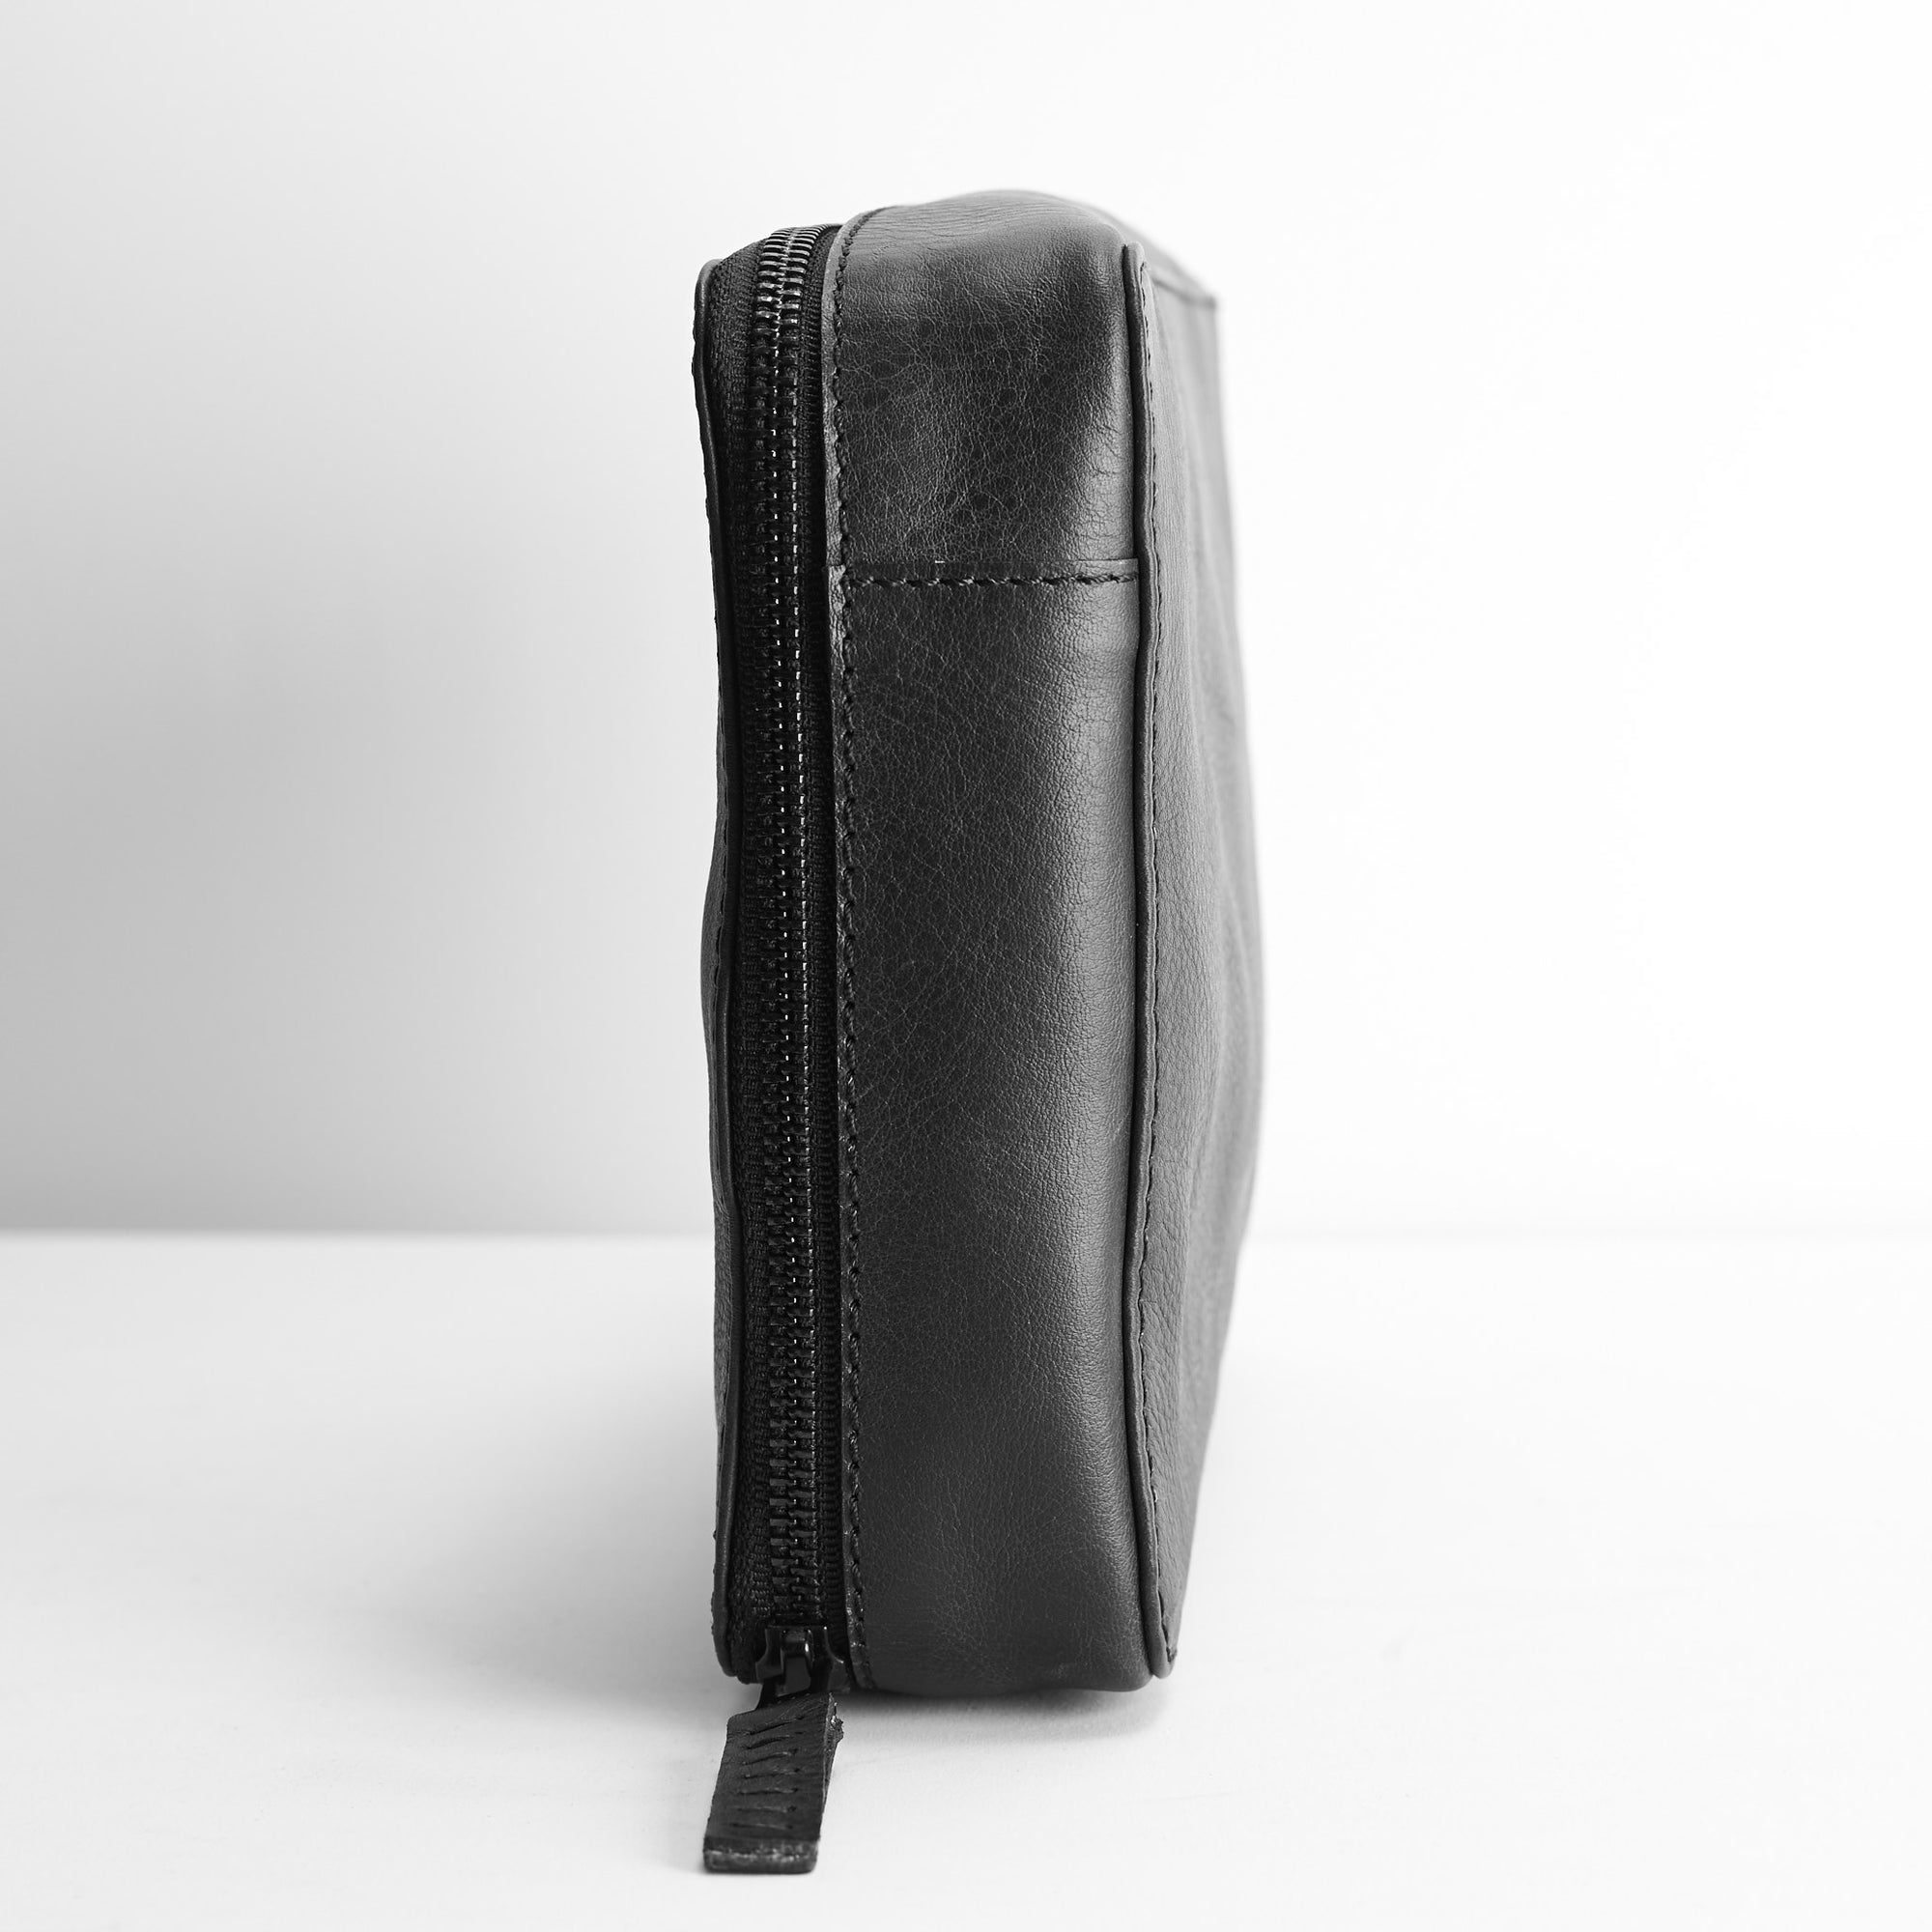 Slim profile. Black tech gear zipper bag. Gear pouch by Capra Leather